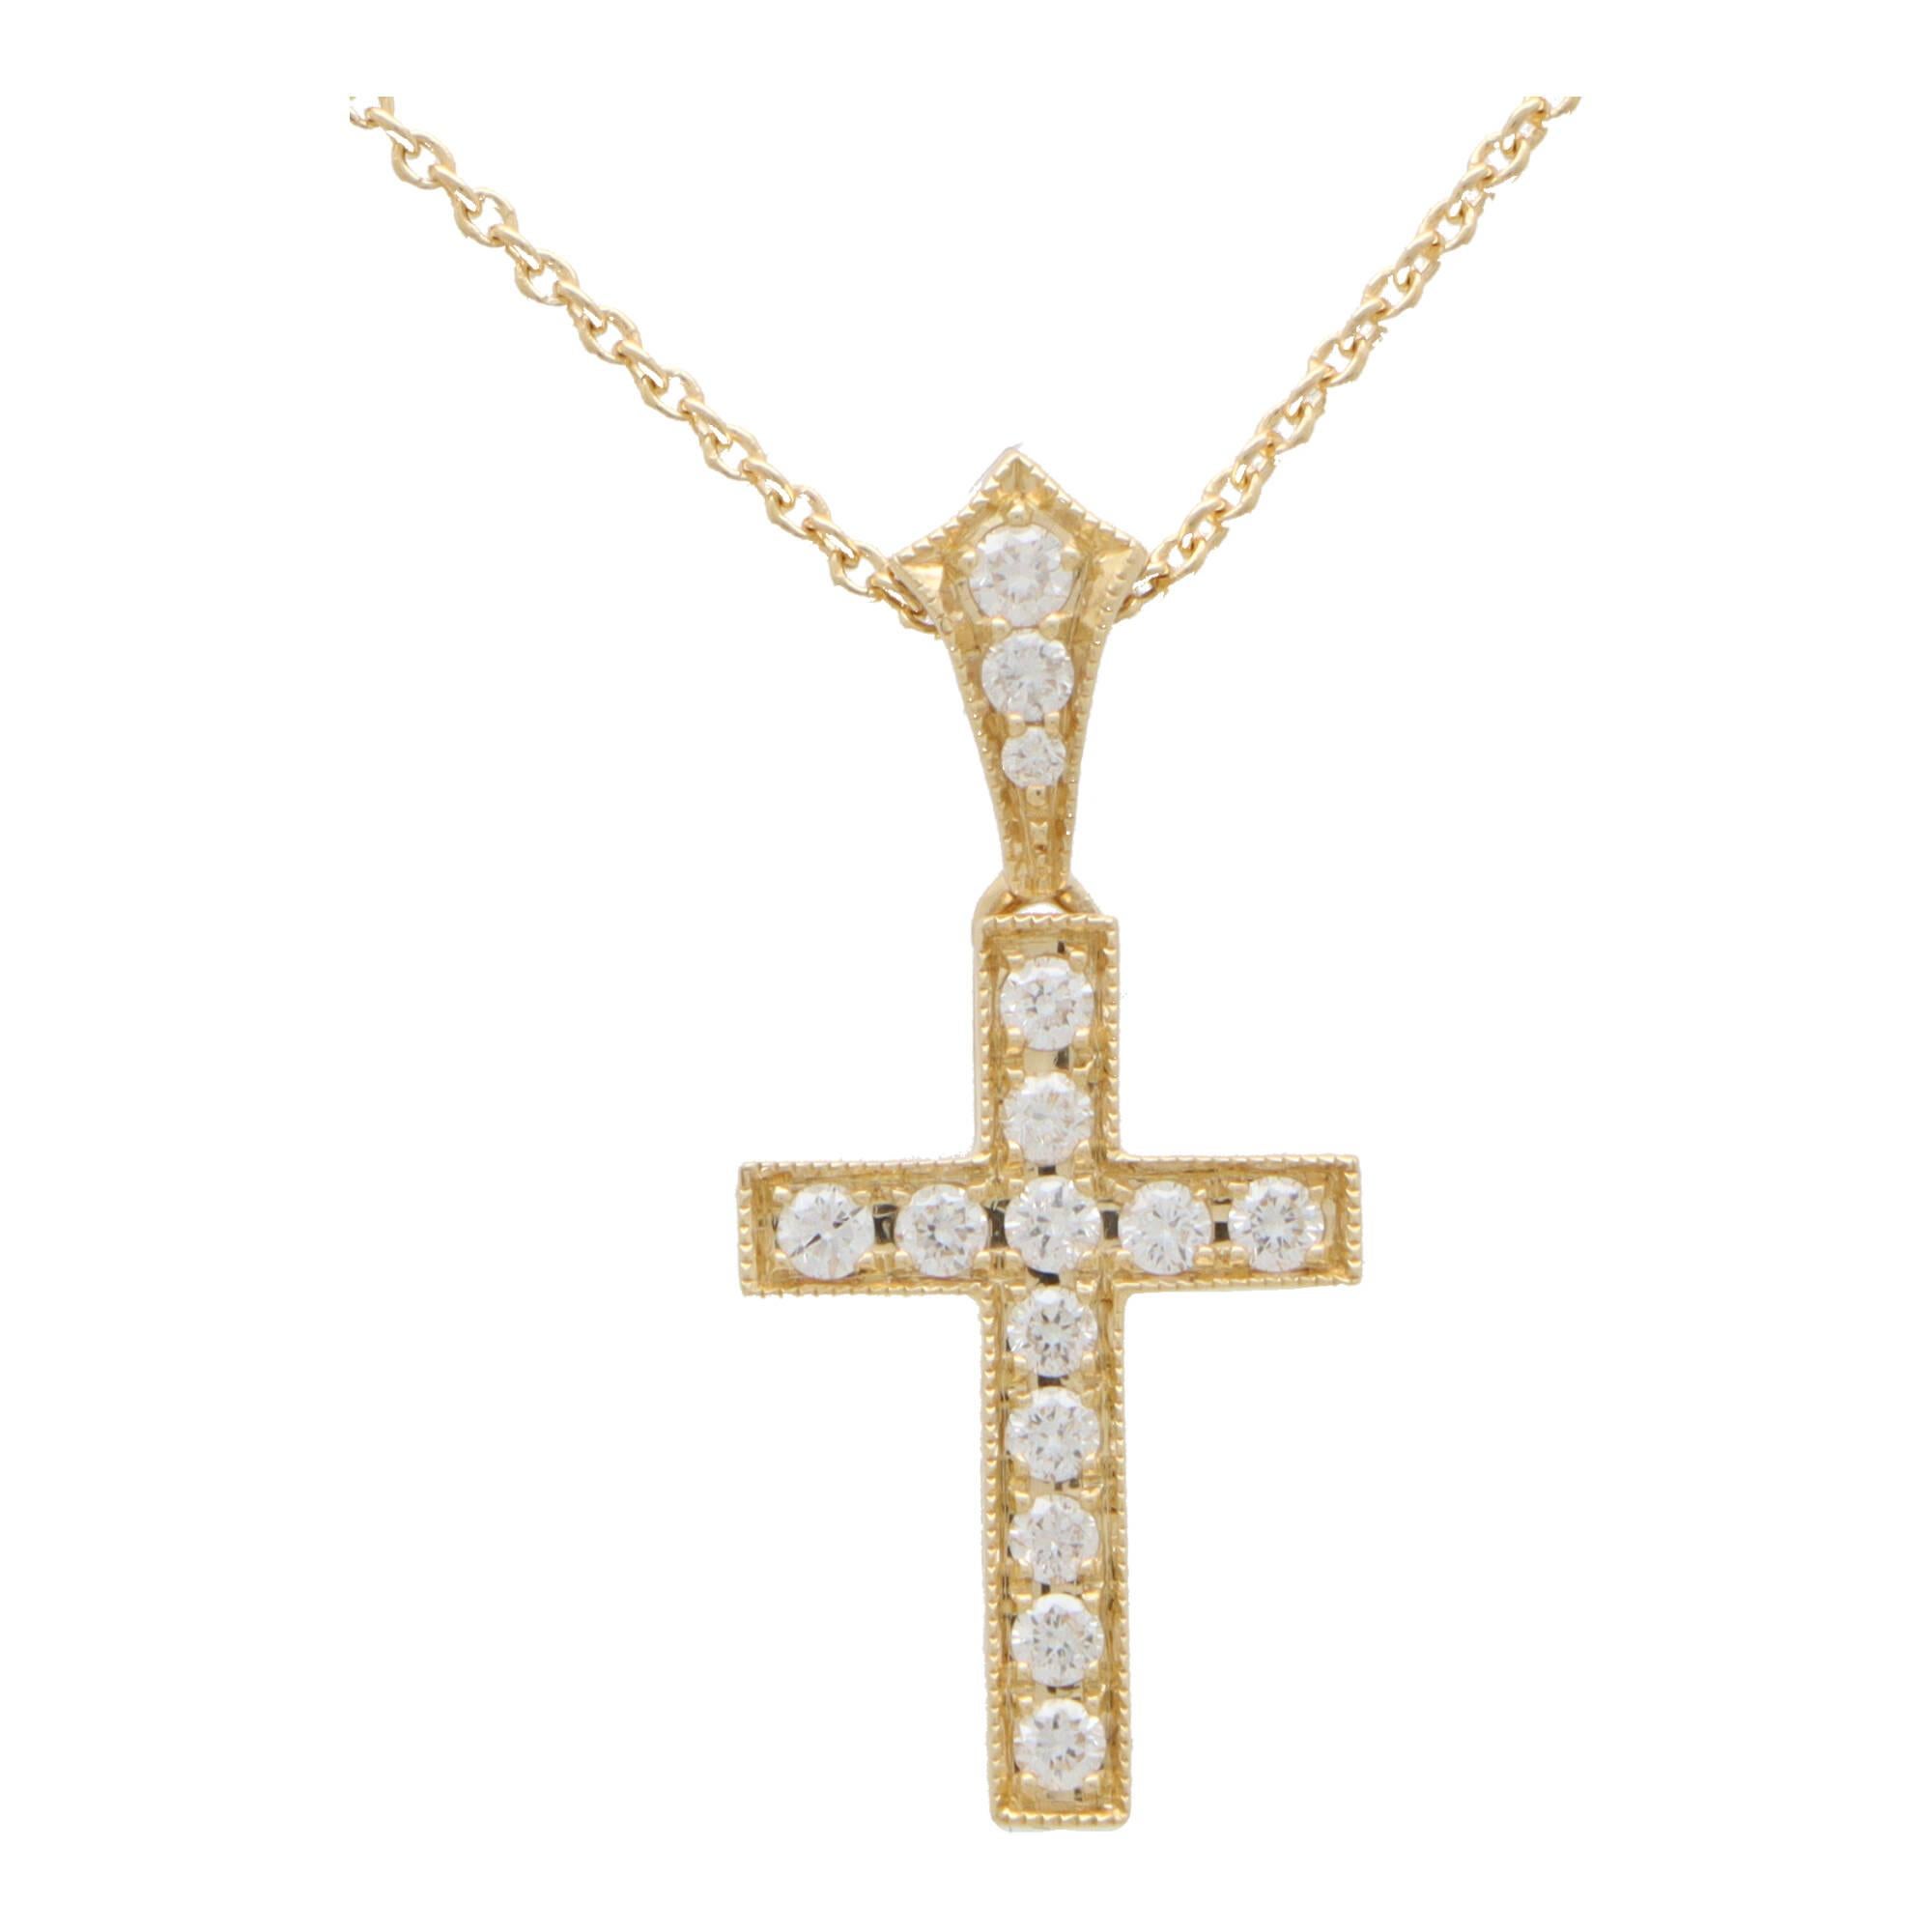  Un magnifique pendentif croix en diamant serti dans de l'or jaune 18k.

Le pendentif représente un motif de croix et est serti de 12 diamants ronds de taille brillant. La croix est suspendue à une anse sertie de diamants, elle aussi sertie de